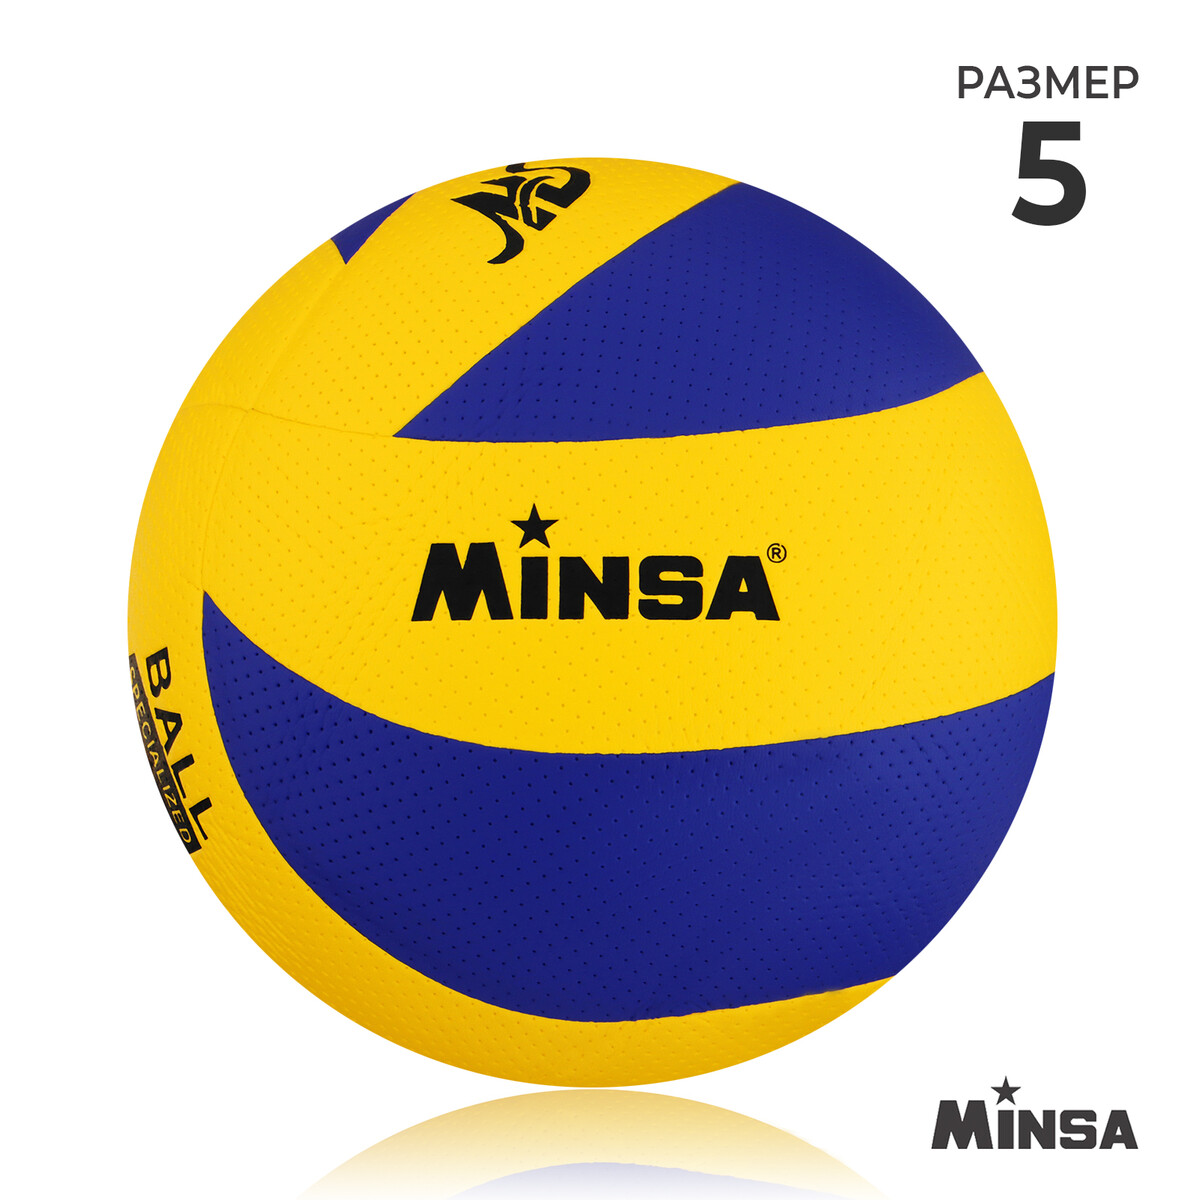 Мяч волейбольный minsa, pu, клееный, 8 панелей, р. 5 мяч волейбольный kelme 9806140 141 р 5 18 пан синт кожа пу клееный бело желто синий